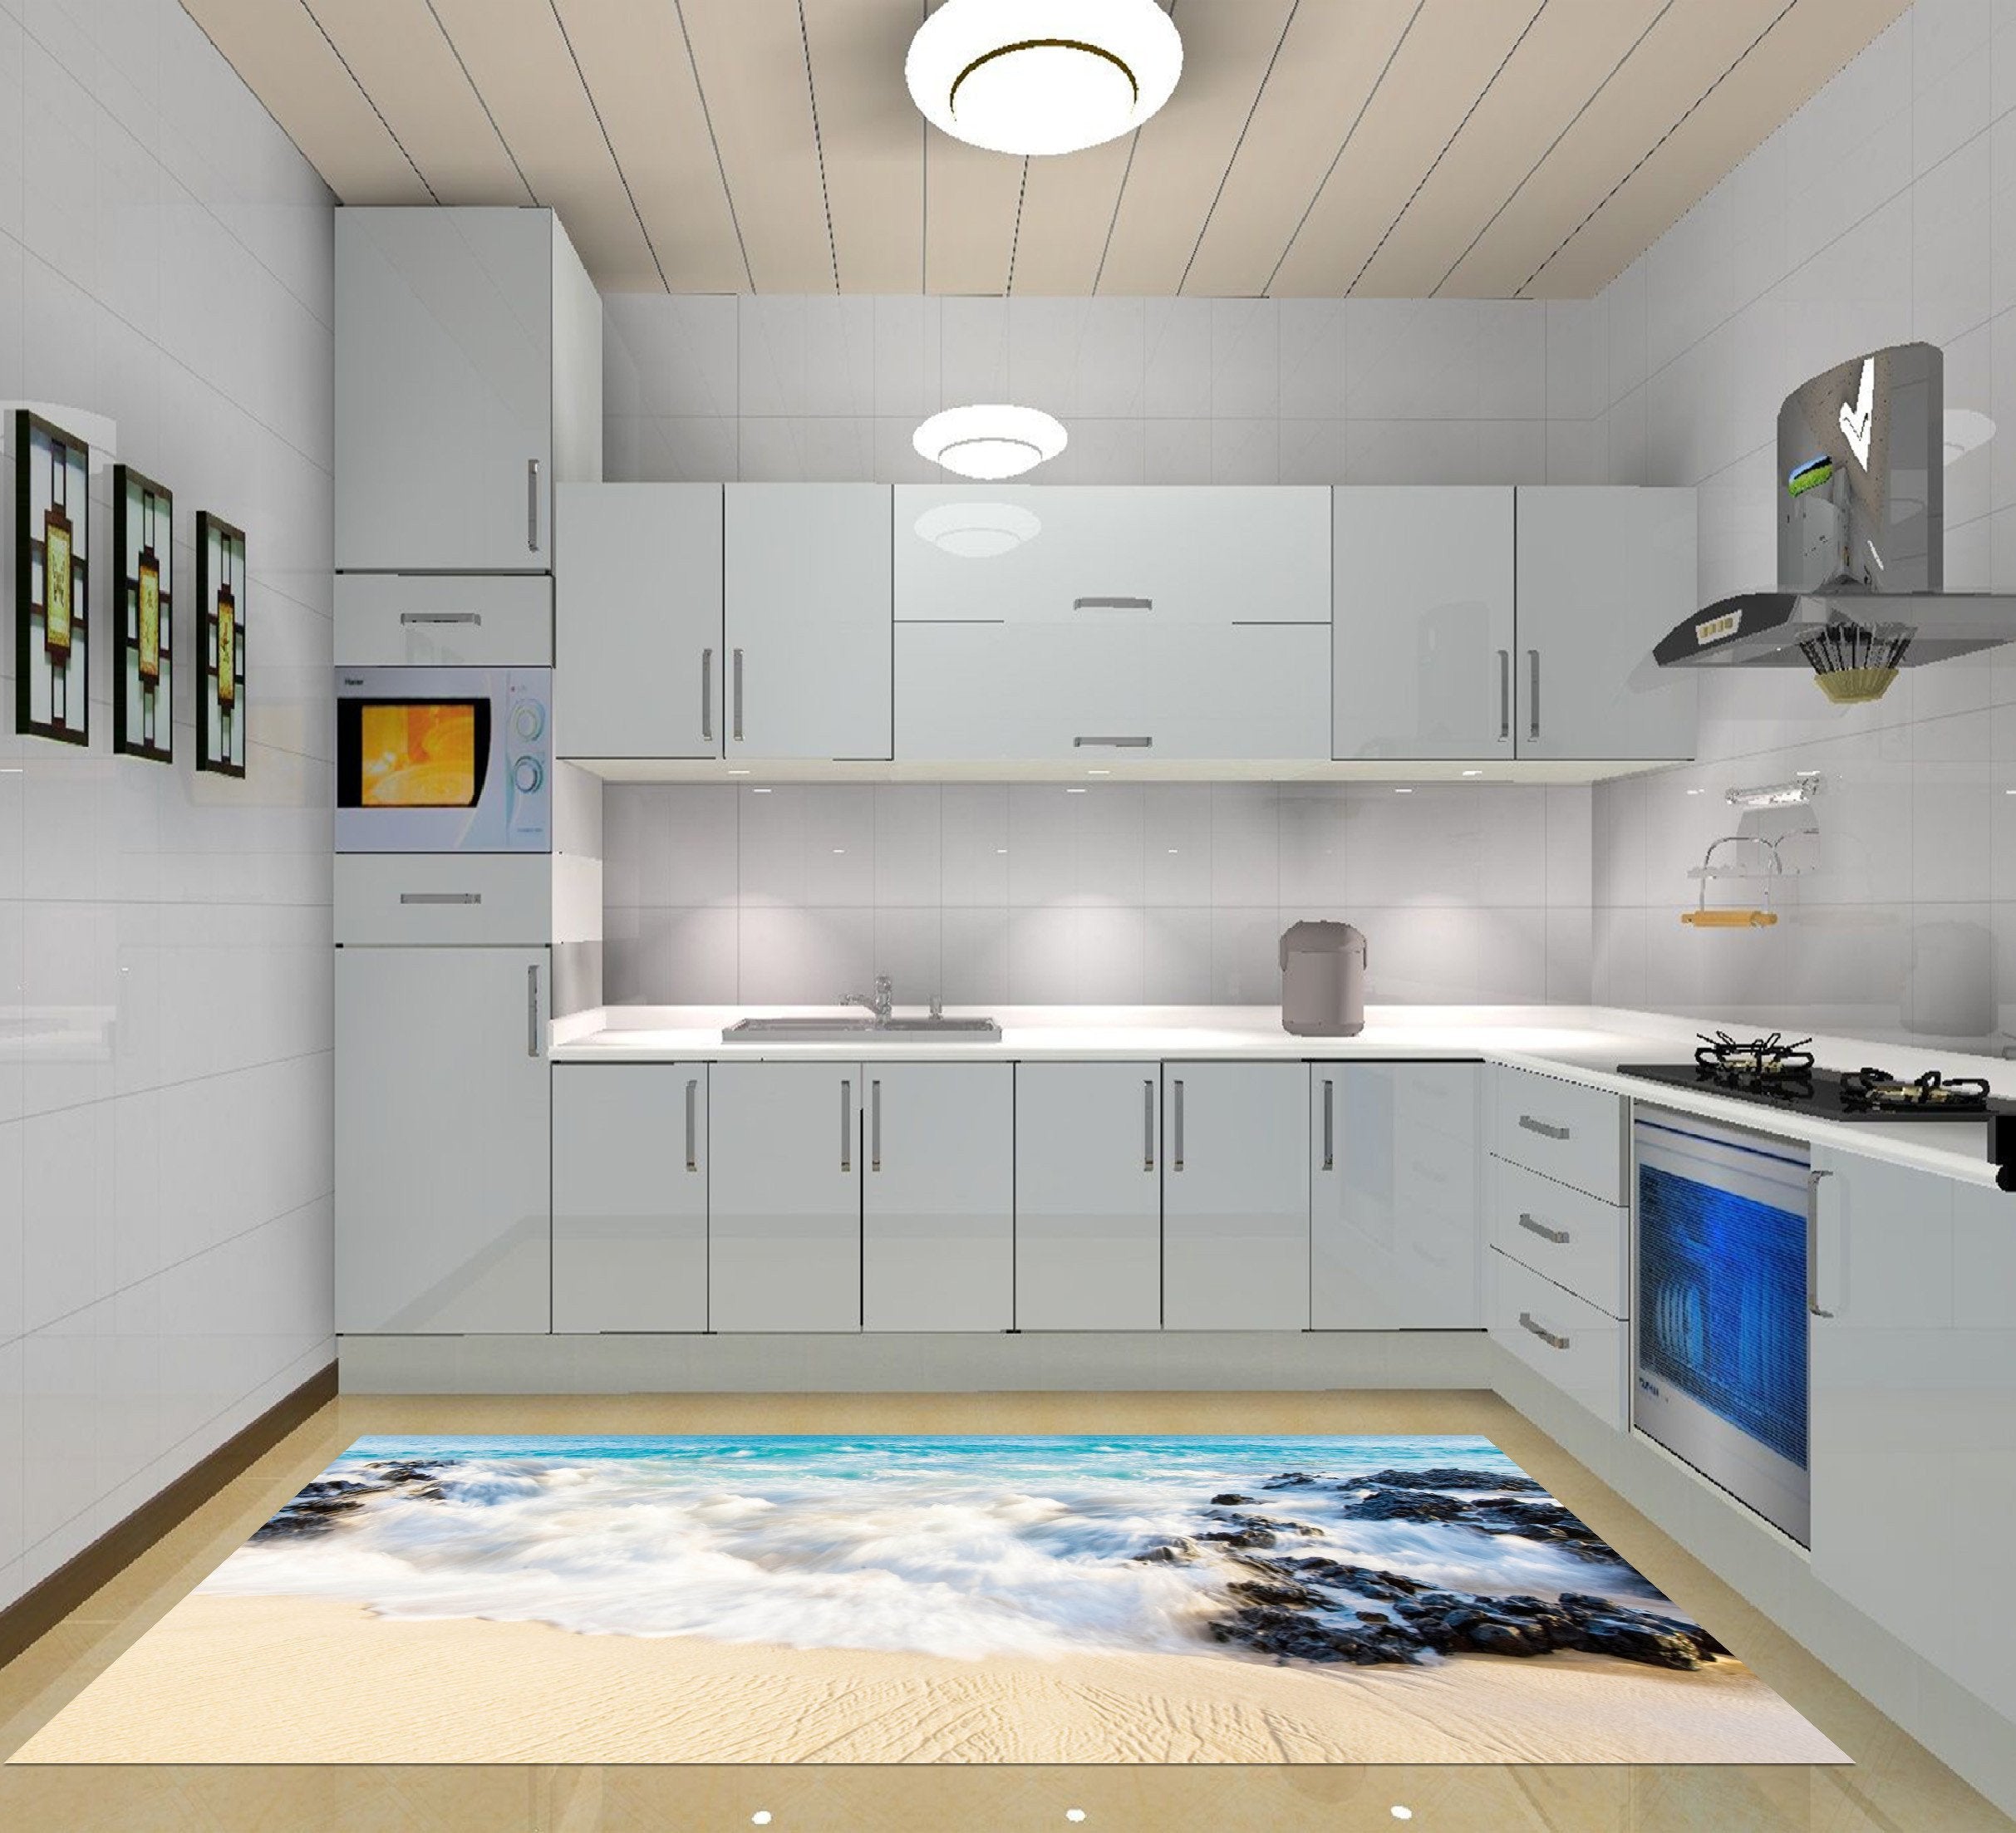 3D Beach Scenery 027 Kitchen Mat Floor Mural Wallpaper AJ Wallpaper 